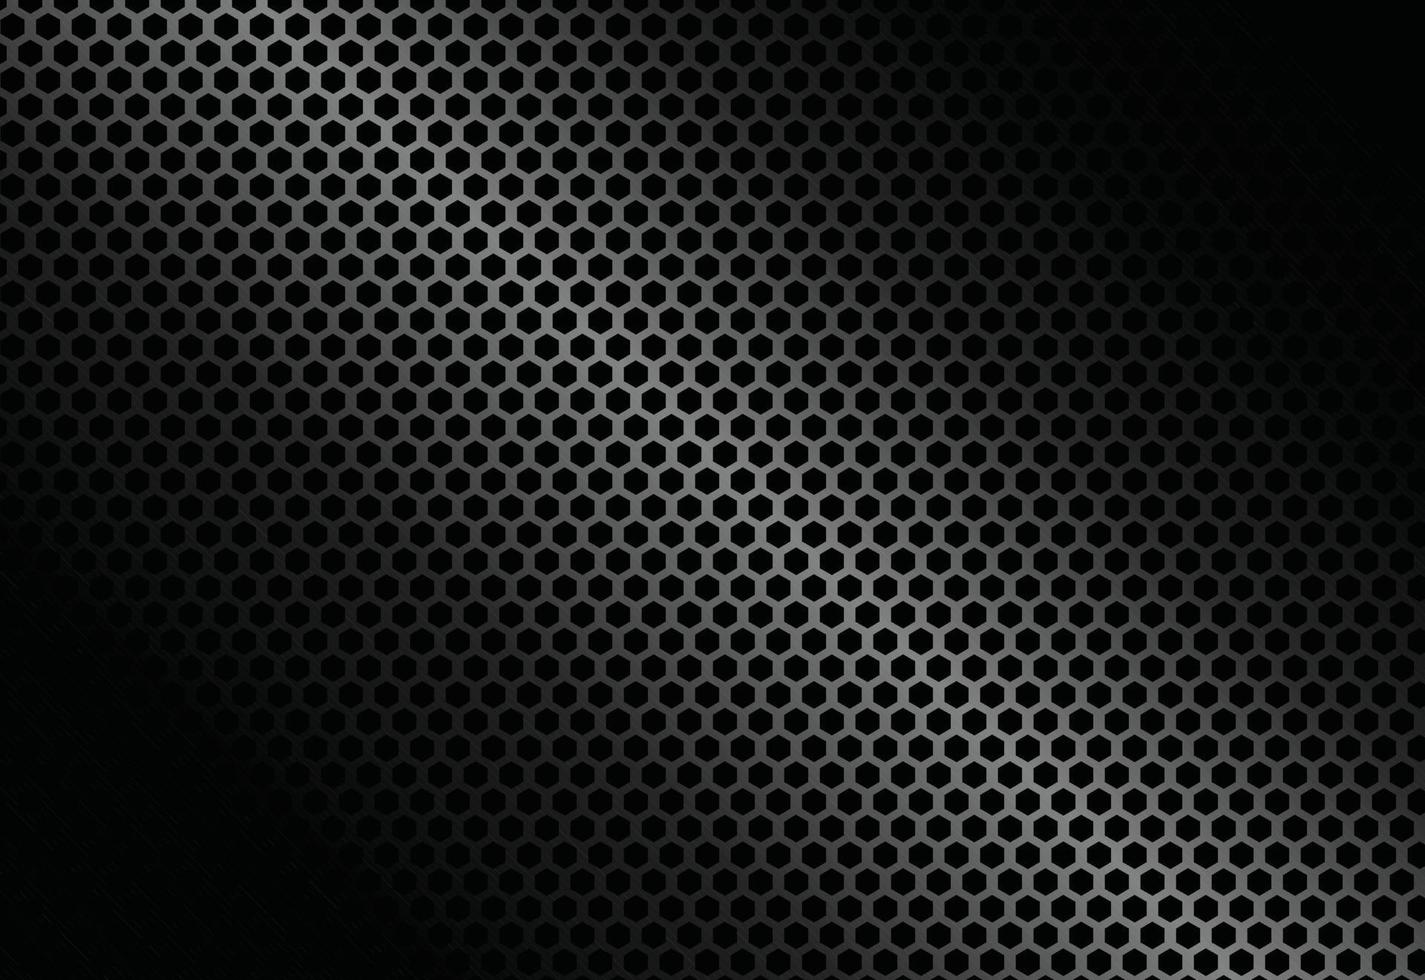 fondo de acero de textura de metal negro. chapa perforada. ilustración vectorial vector